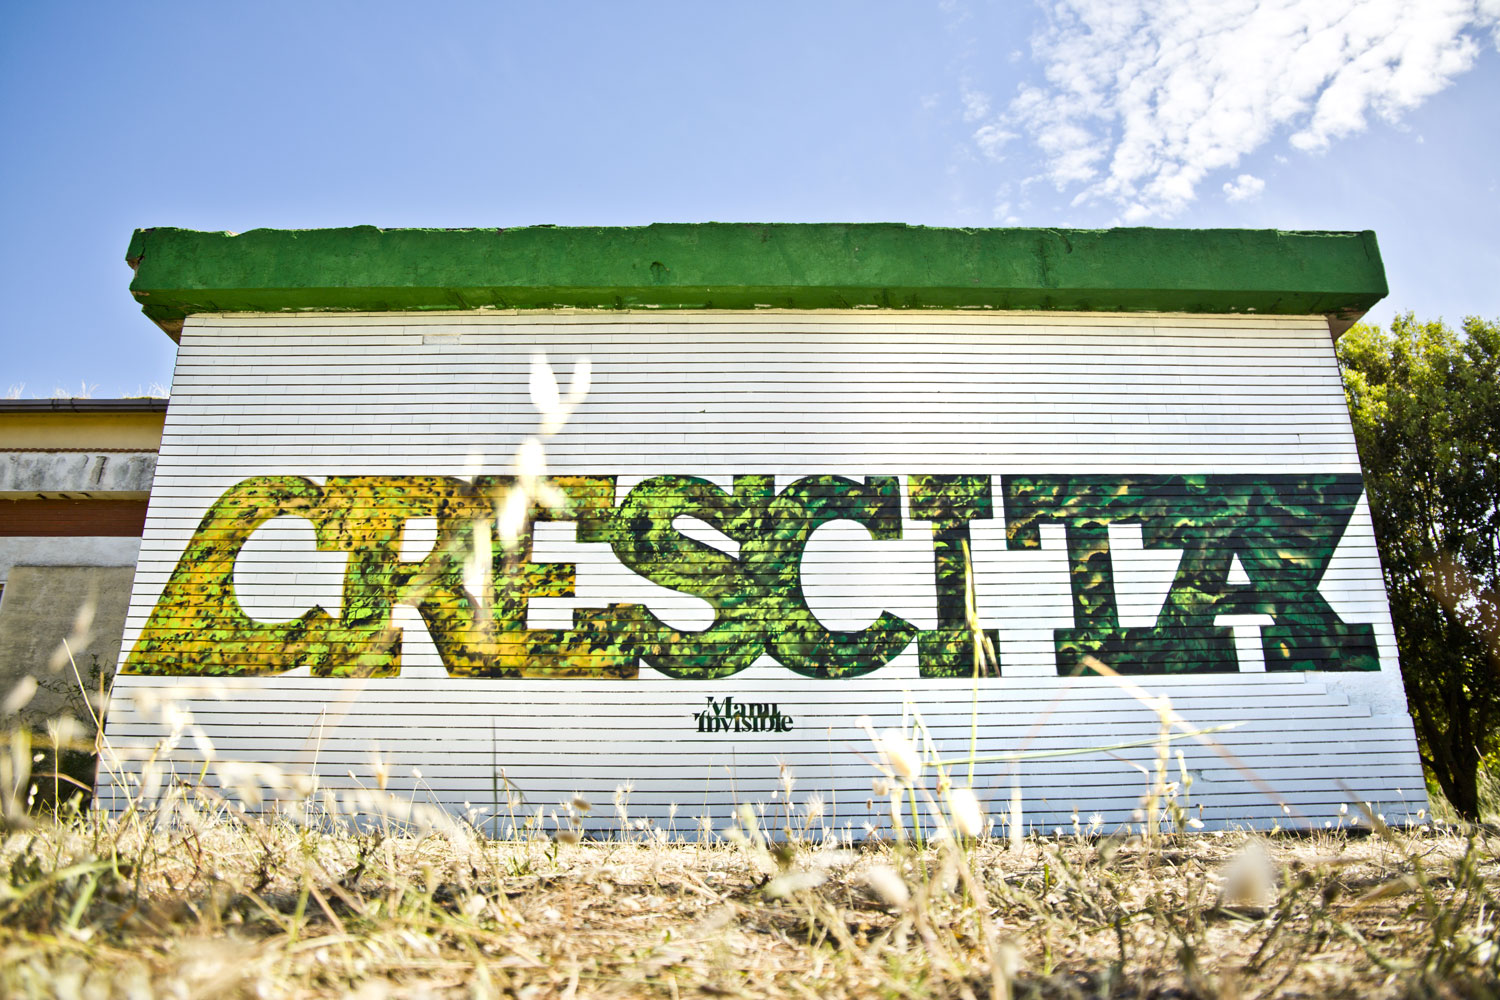 ''Crescita'' Spray e quarzo su muro in mattoni 6 x 4 m Villacidro 2017